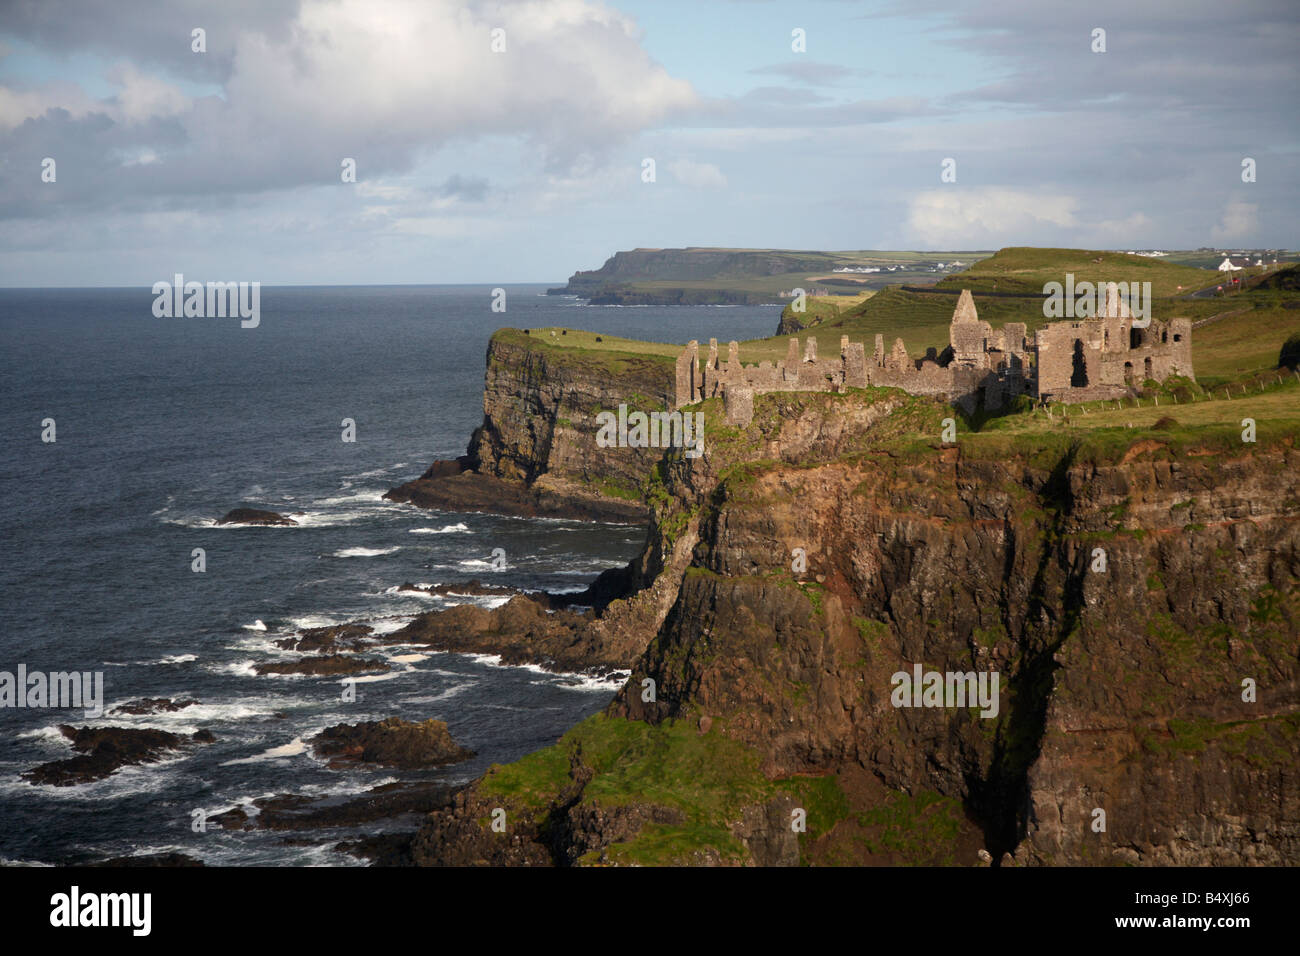 Le château de dunluce et le nord de la côte d'Antrim county antrim irlande du nord uk Banque D'Images